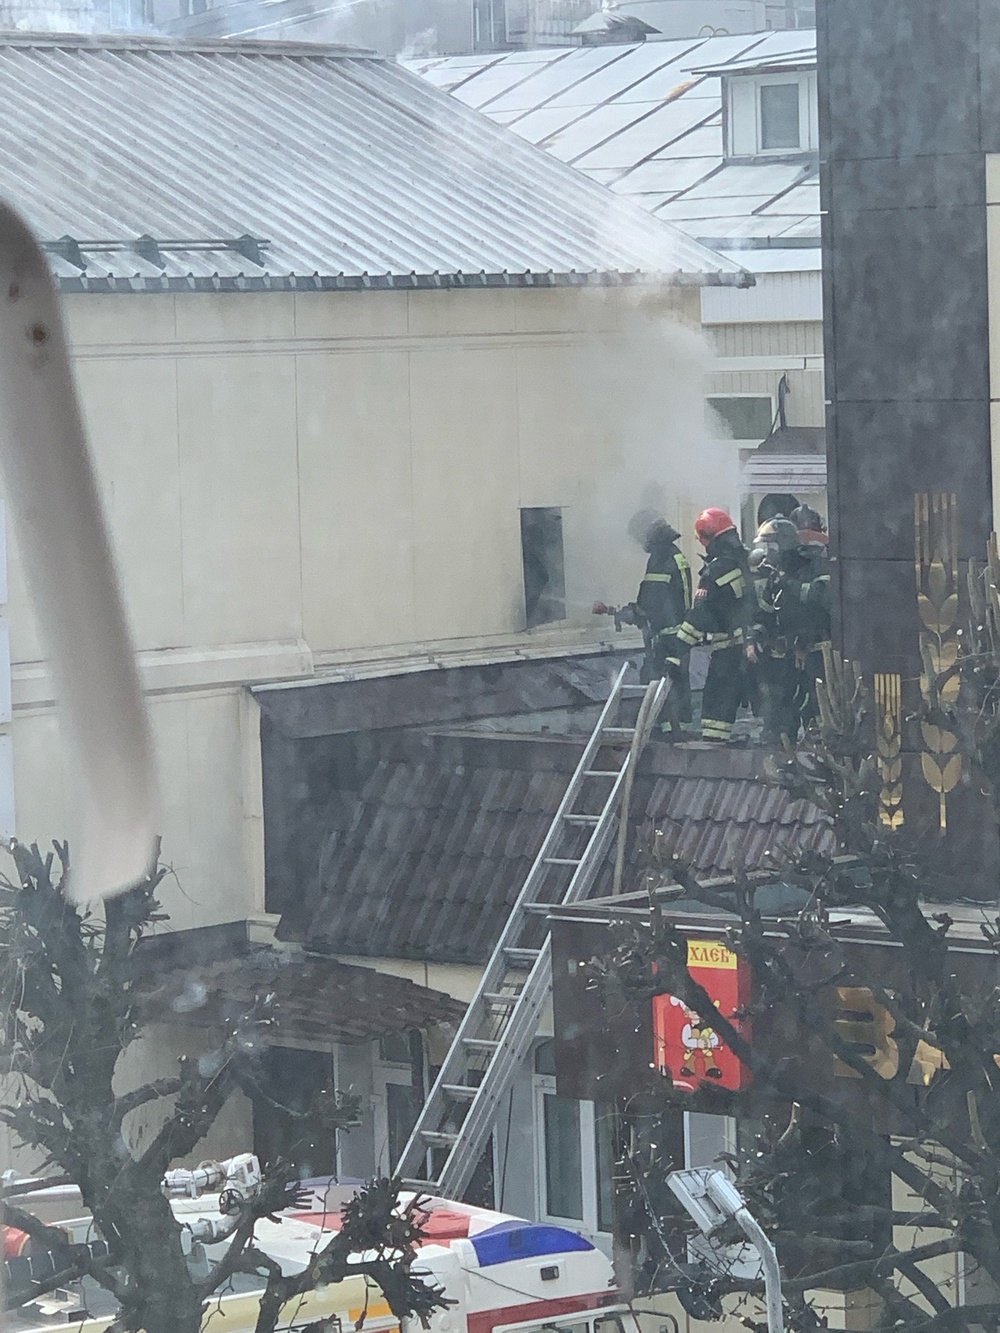 Дымящаяся крыша и много пожарных: в Твери горит ЗАО «Хлеб»